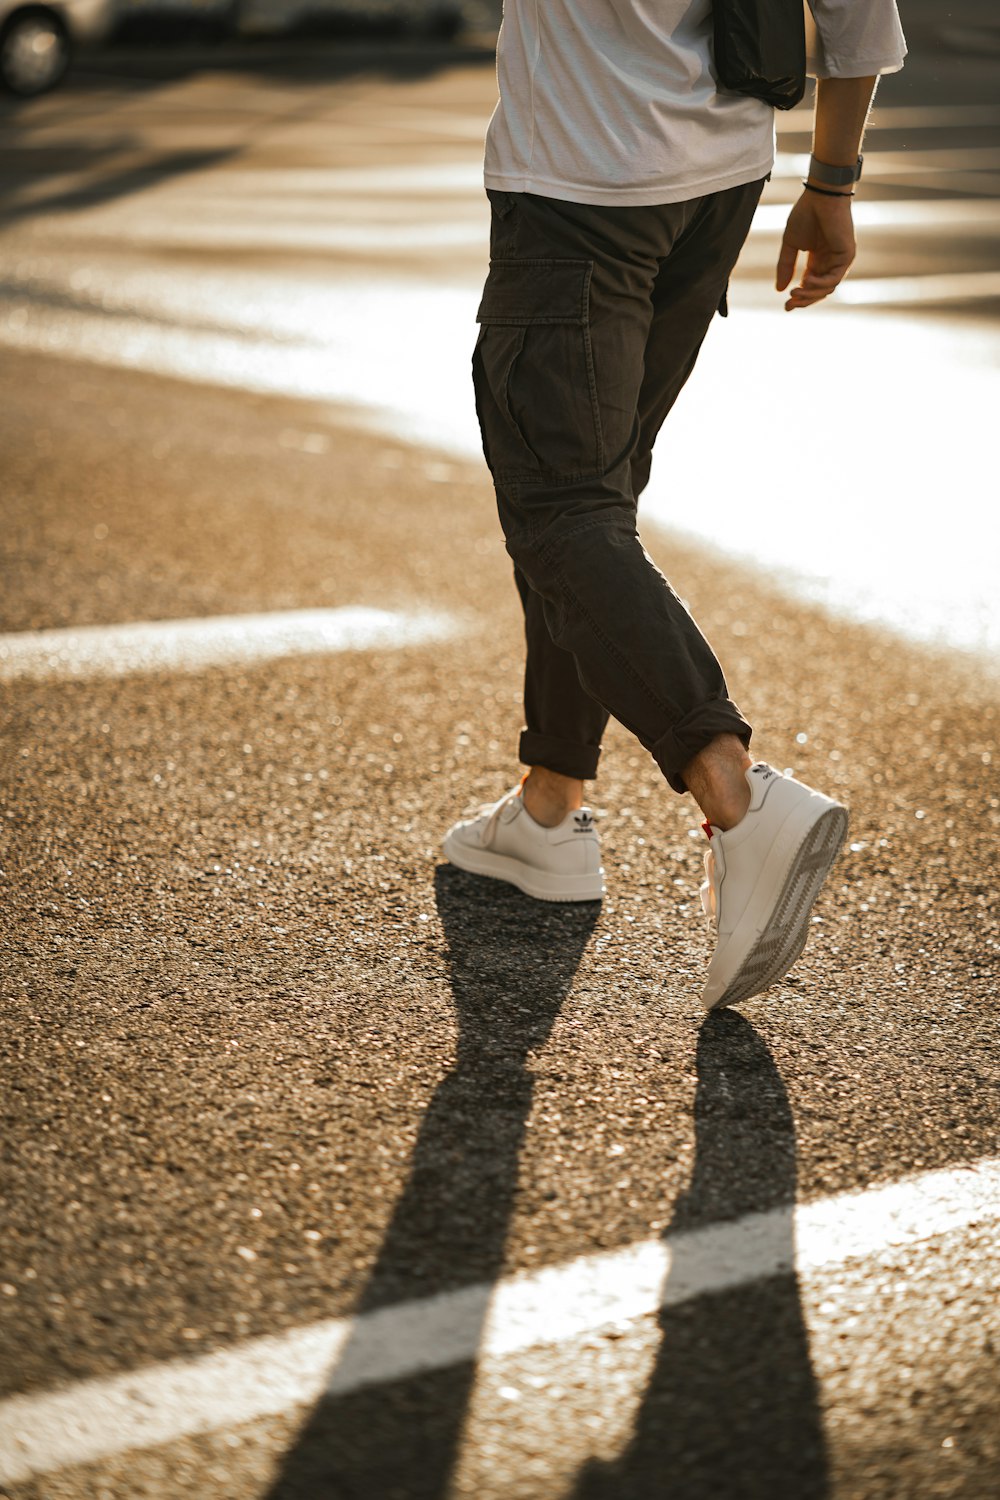 黒いズボンと白いスニーカーを履いた人が、昼間、茶色のアスファルトの道を歩いています